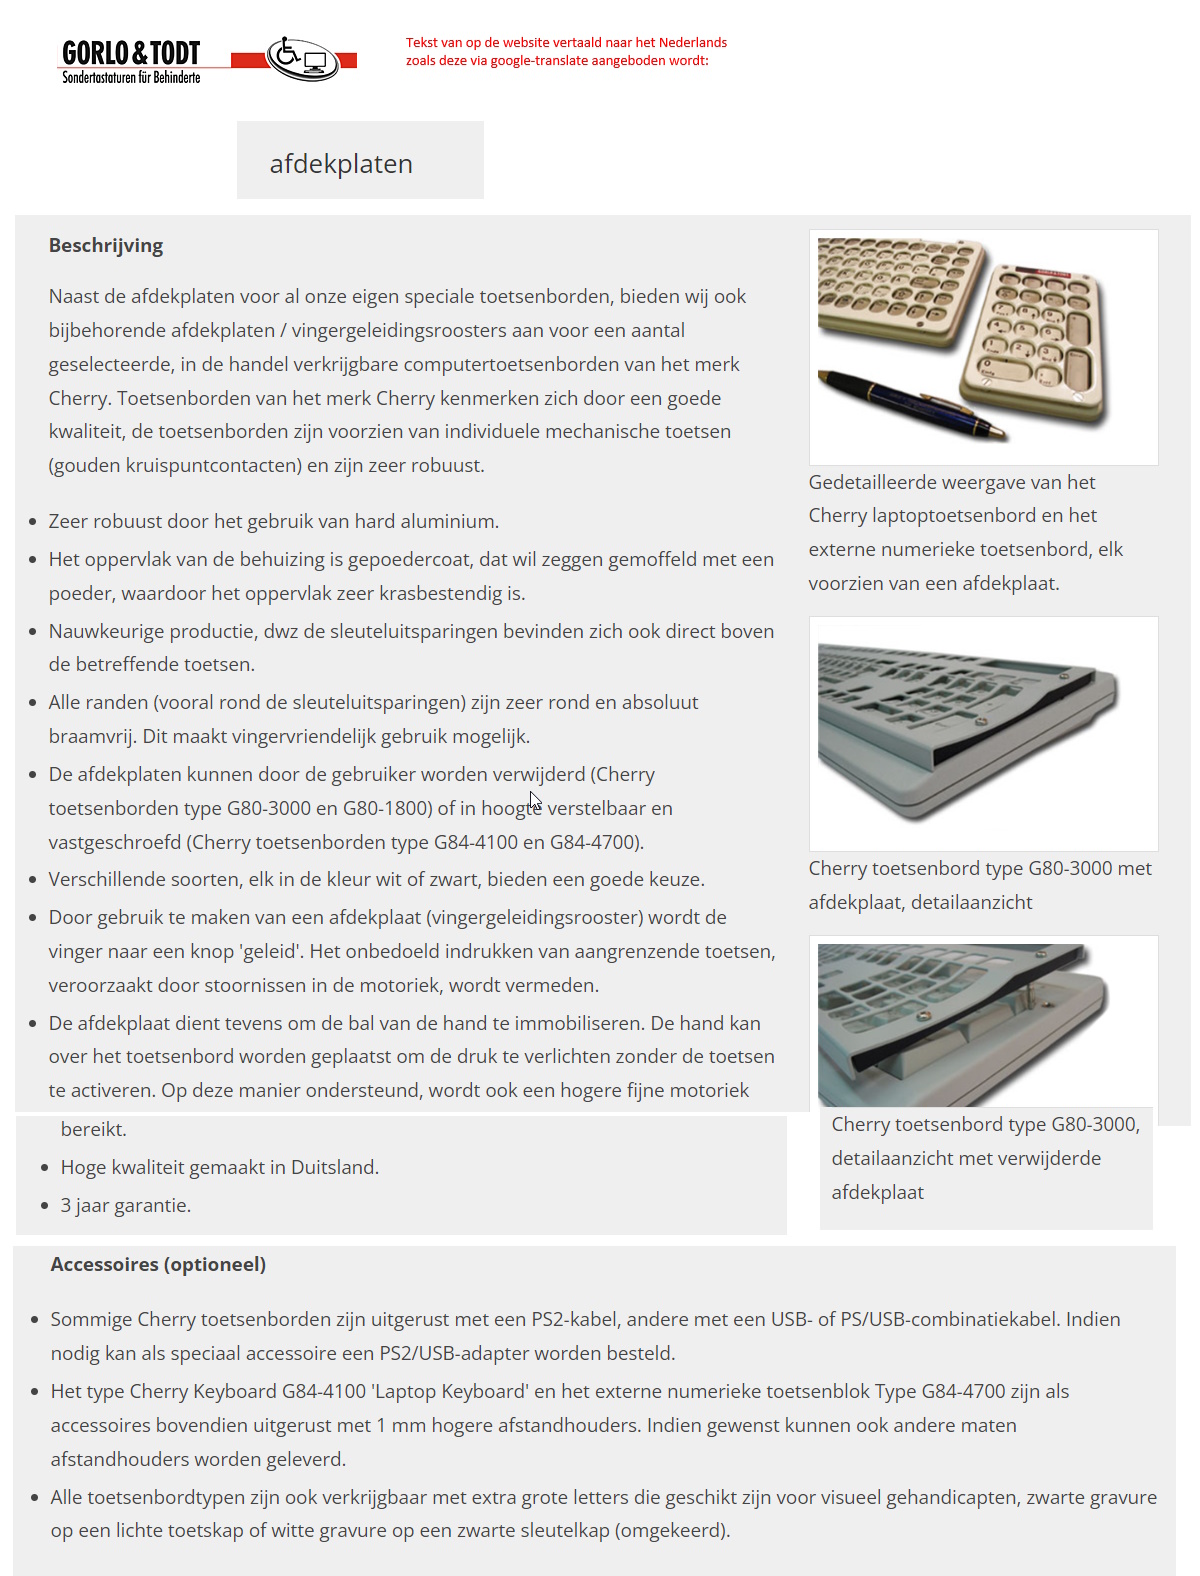 toegevoegd document 4 van Gorlo & Todt Cherry Tastatur mit Abdeckplatte afdekplaat  